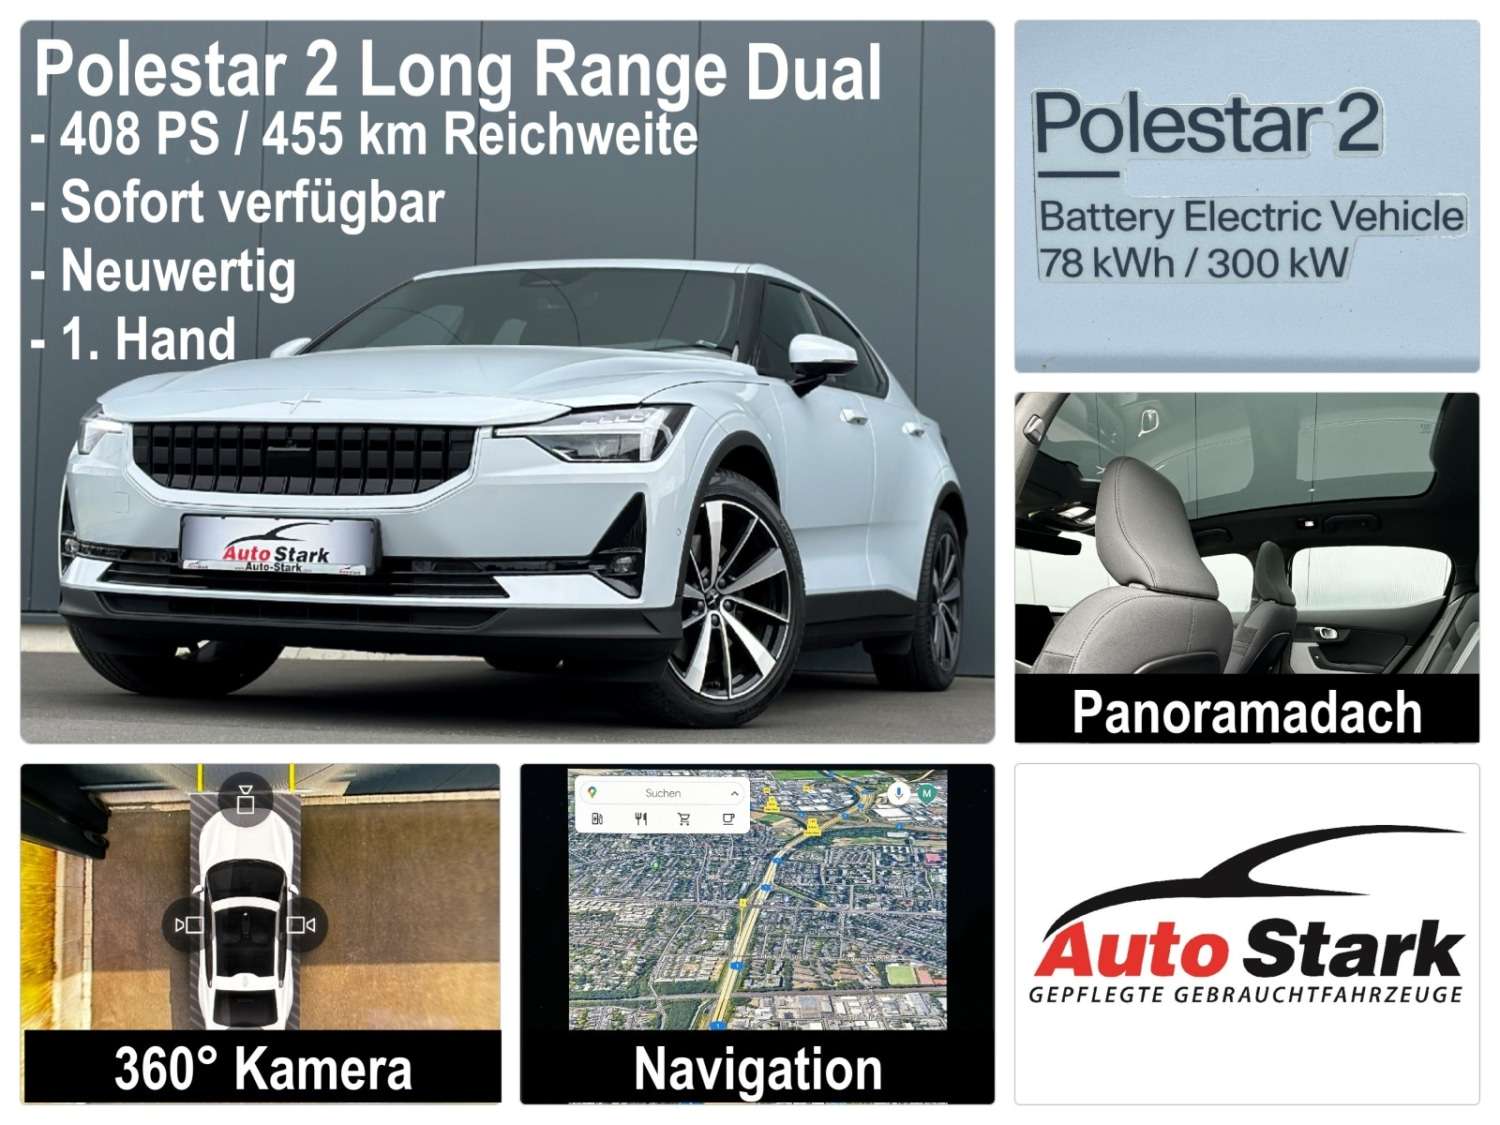 Polestar 2 Sedan in White used in Köln for € 46,990.-